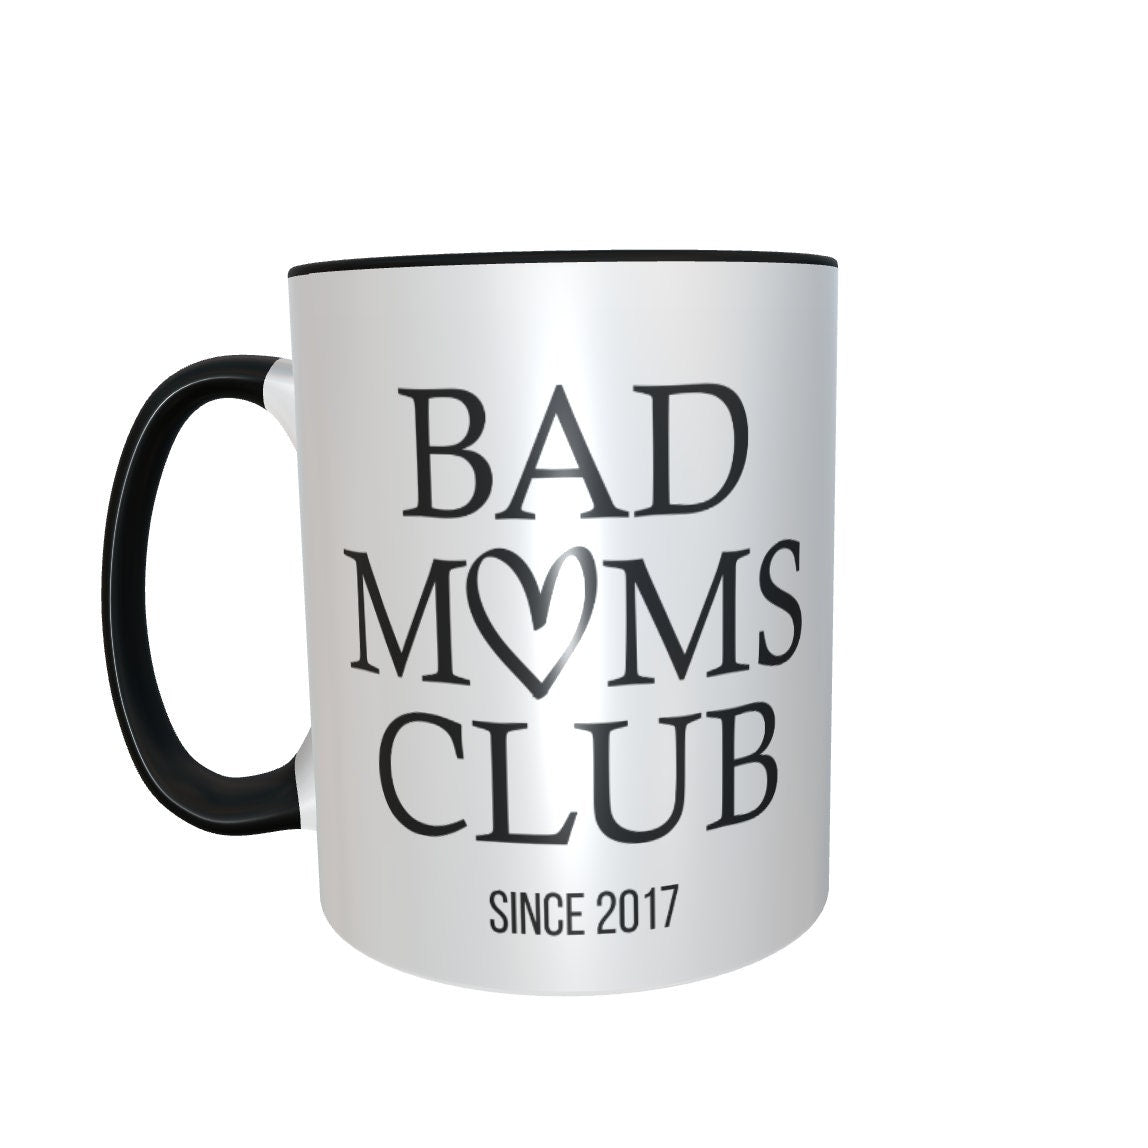 Tasse „Bad Moms Club“ Mama, personalisiert - Cupsandkisses